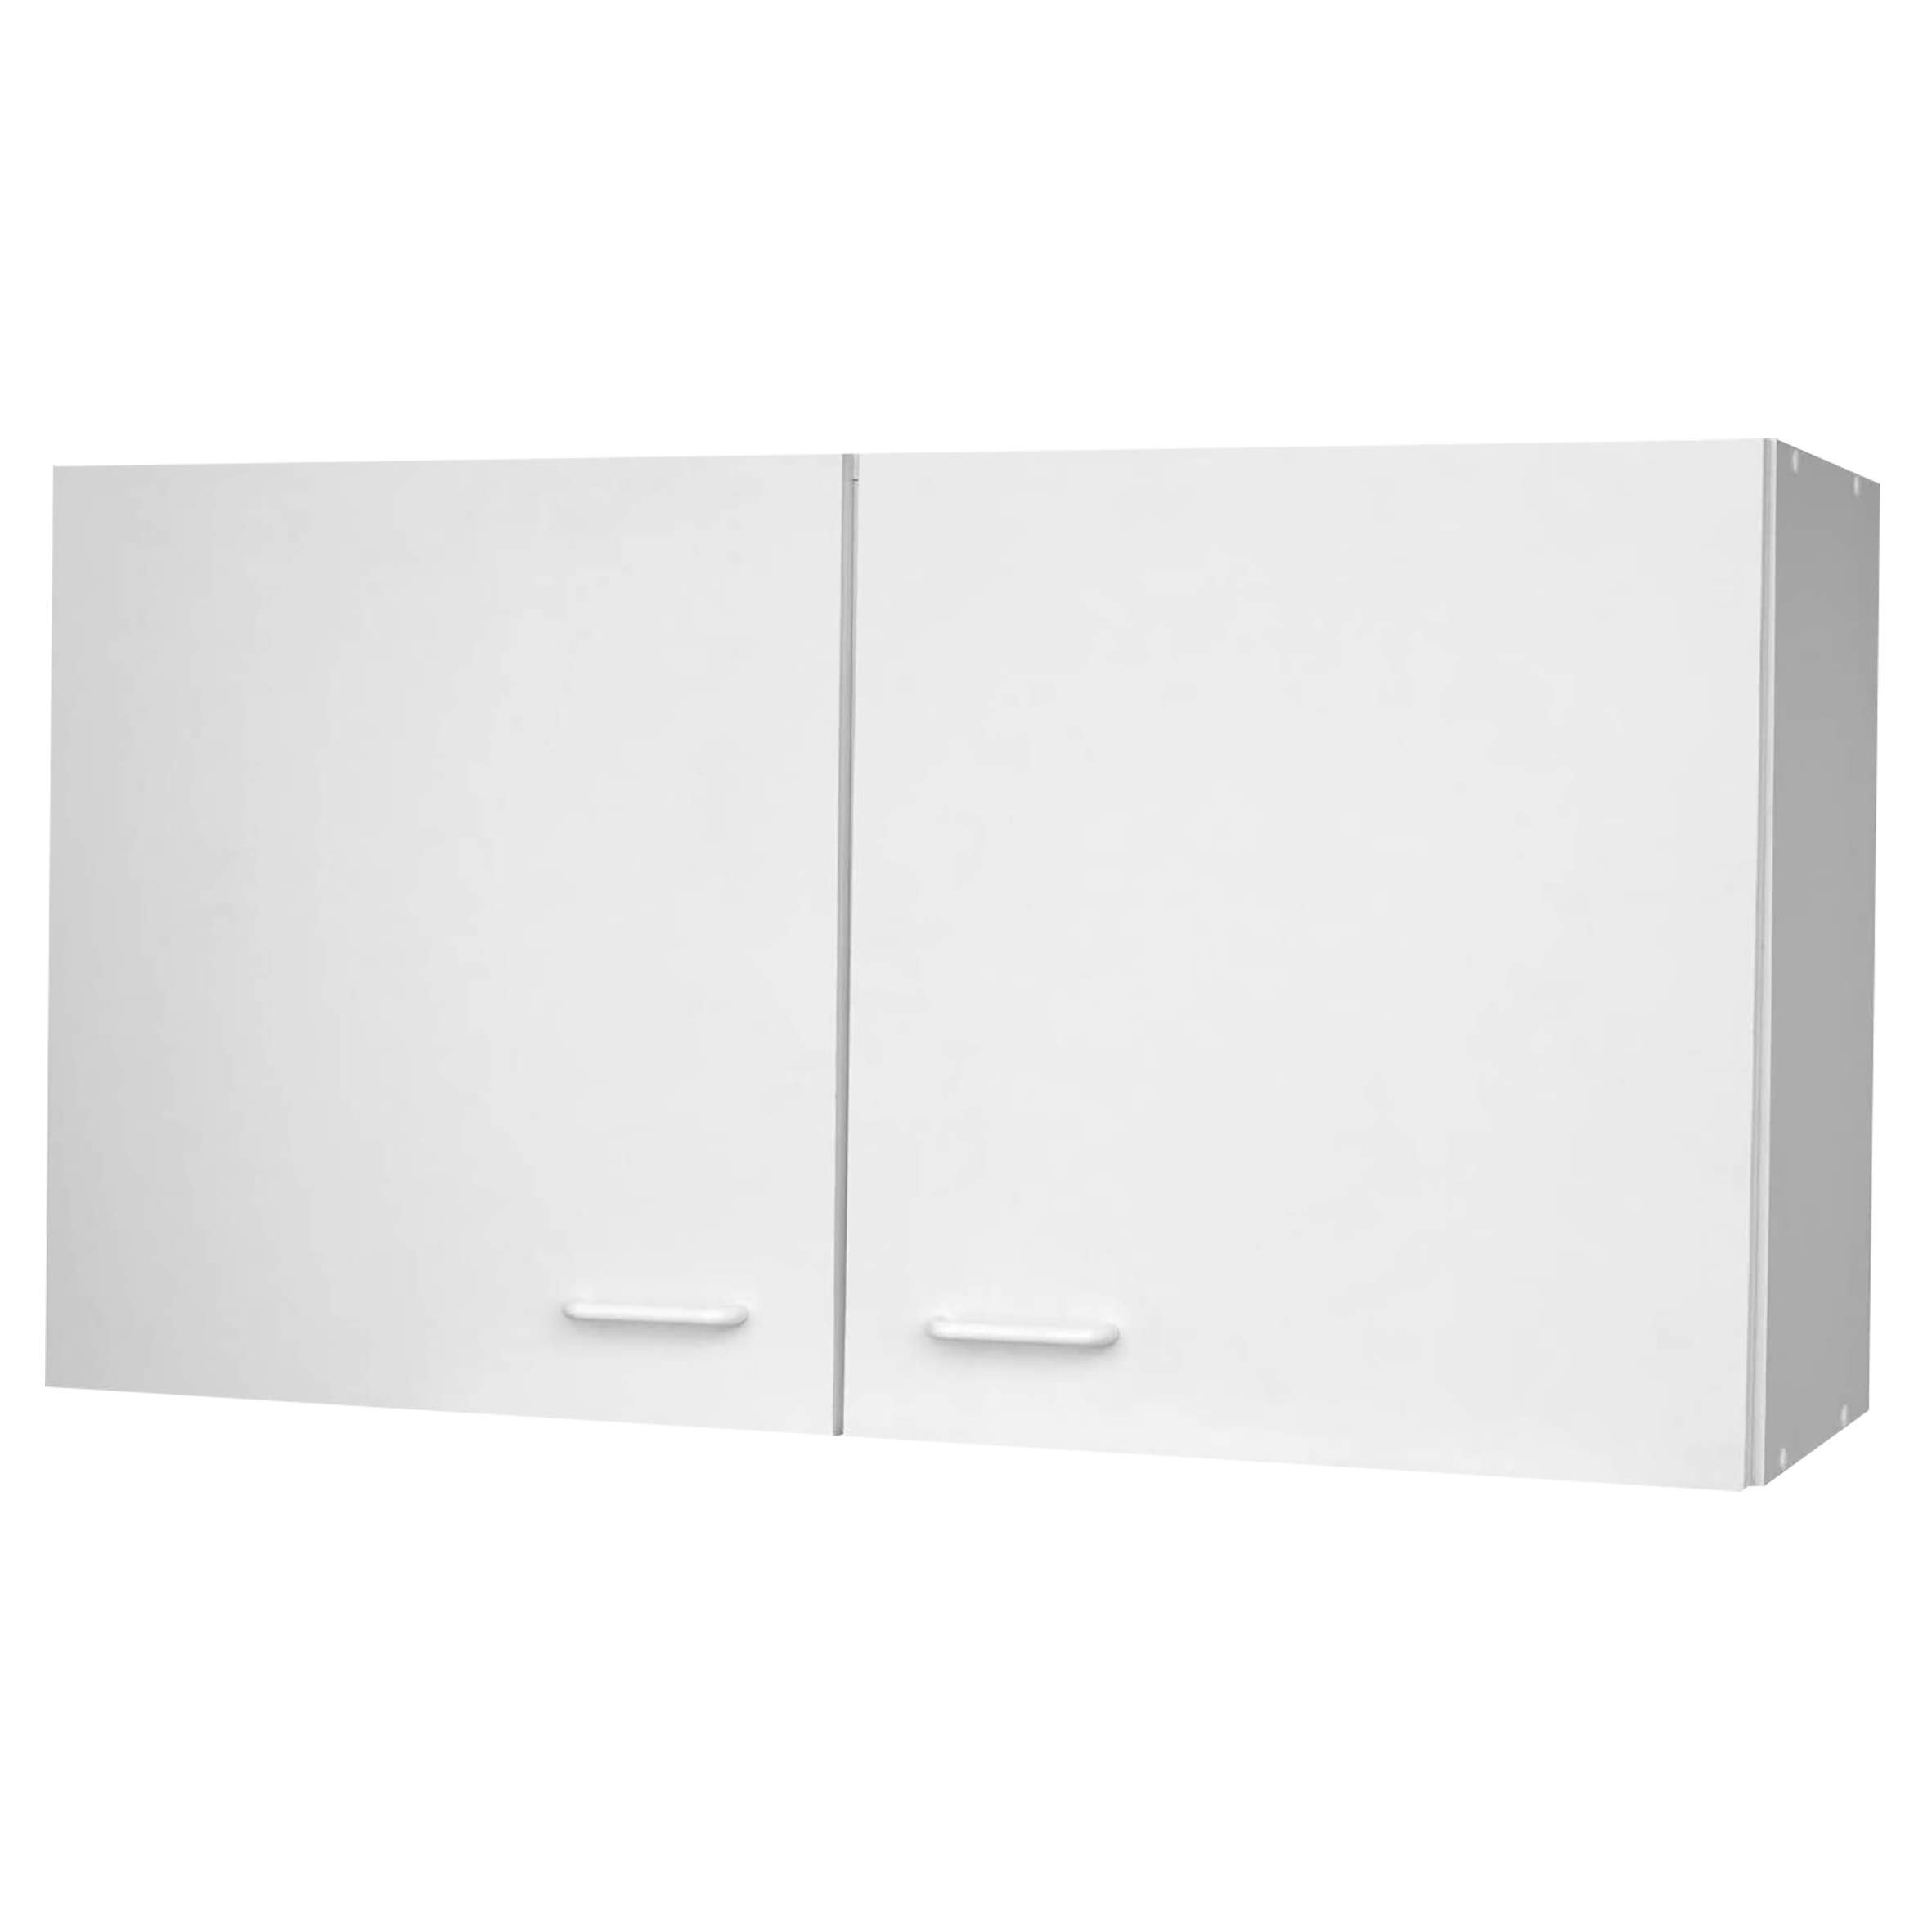 Lüllmann Küchenoberschrank, 2 Türen, 1 Boden, 530 x 1000 x 350 mm, weiß